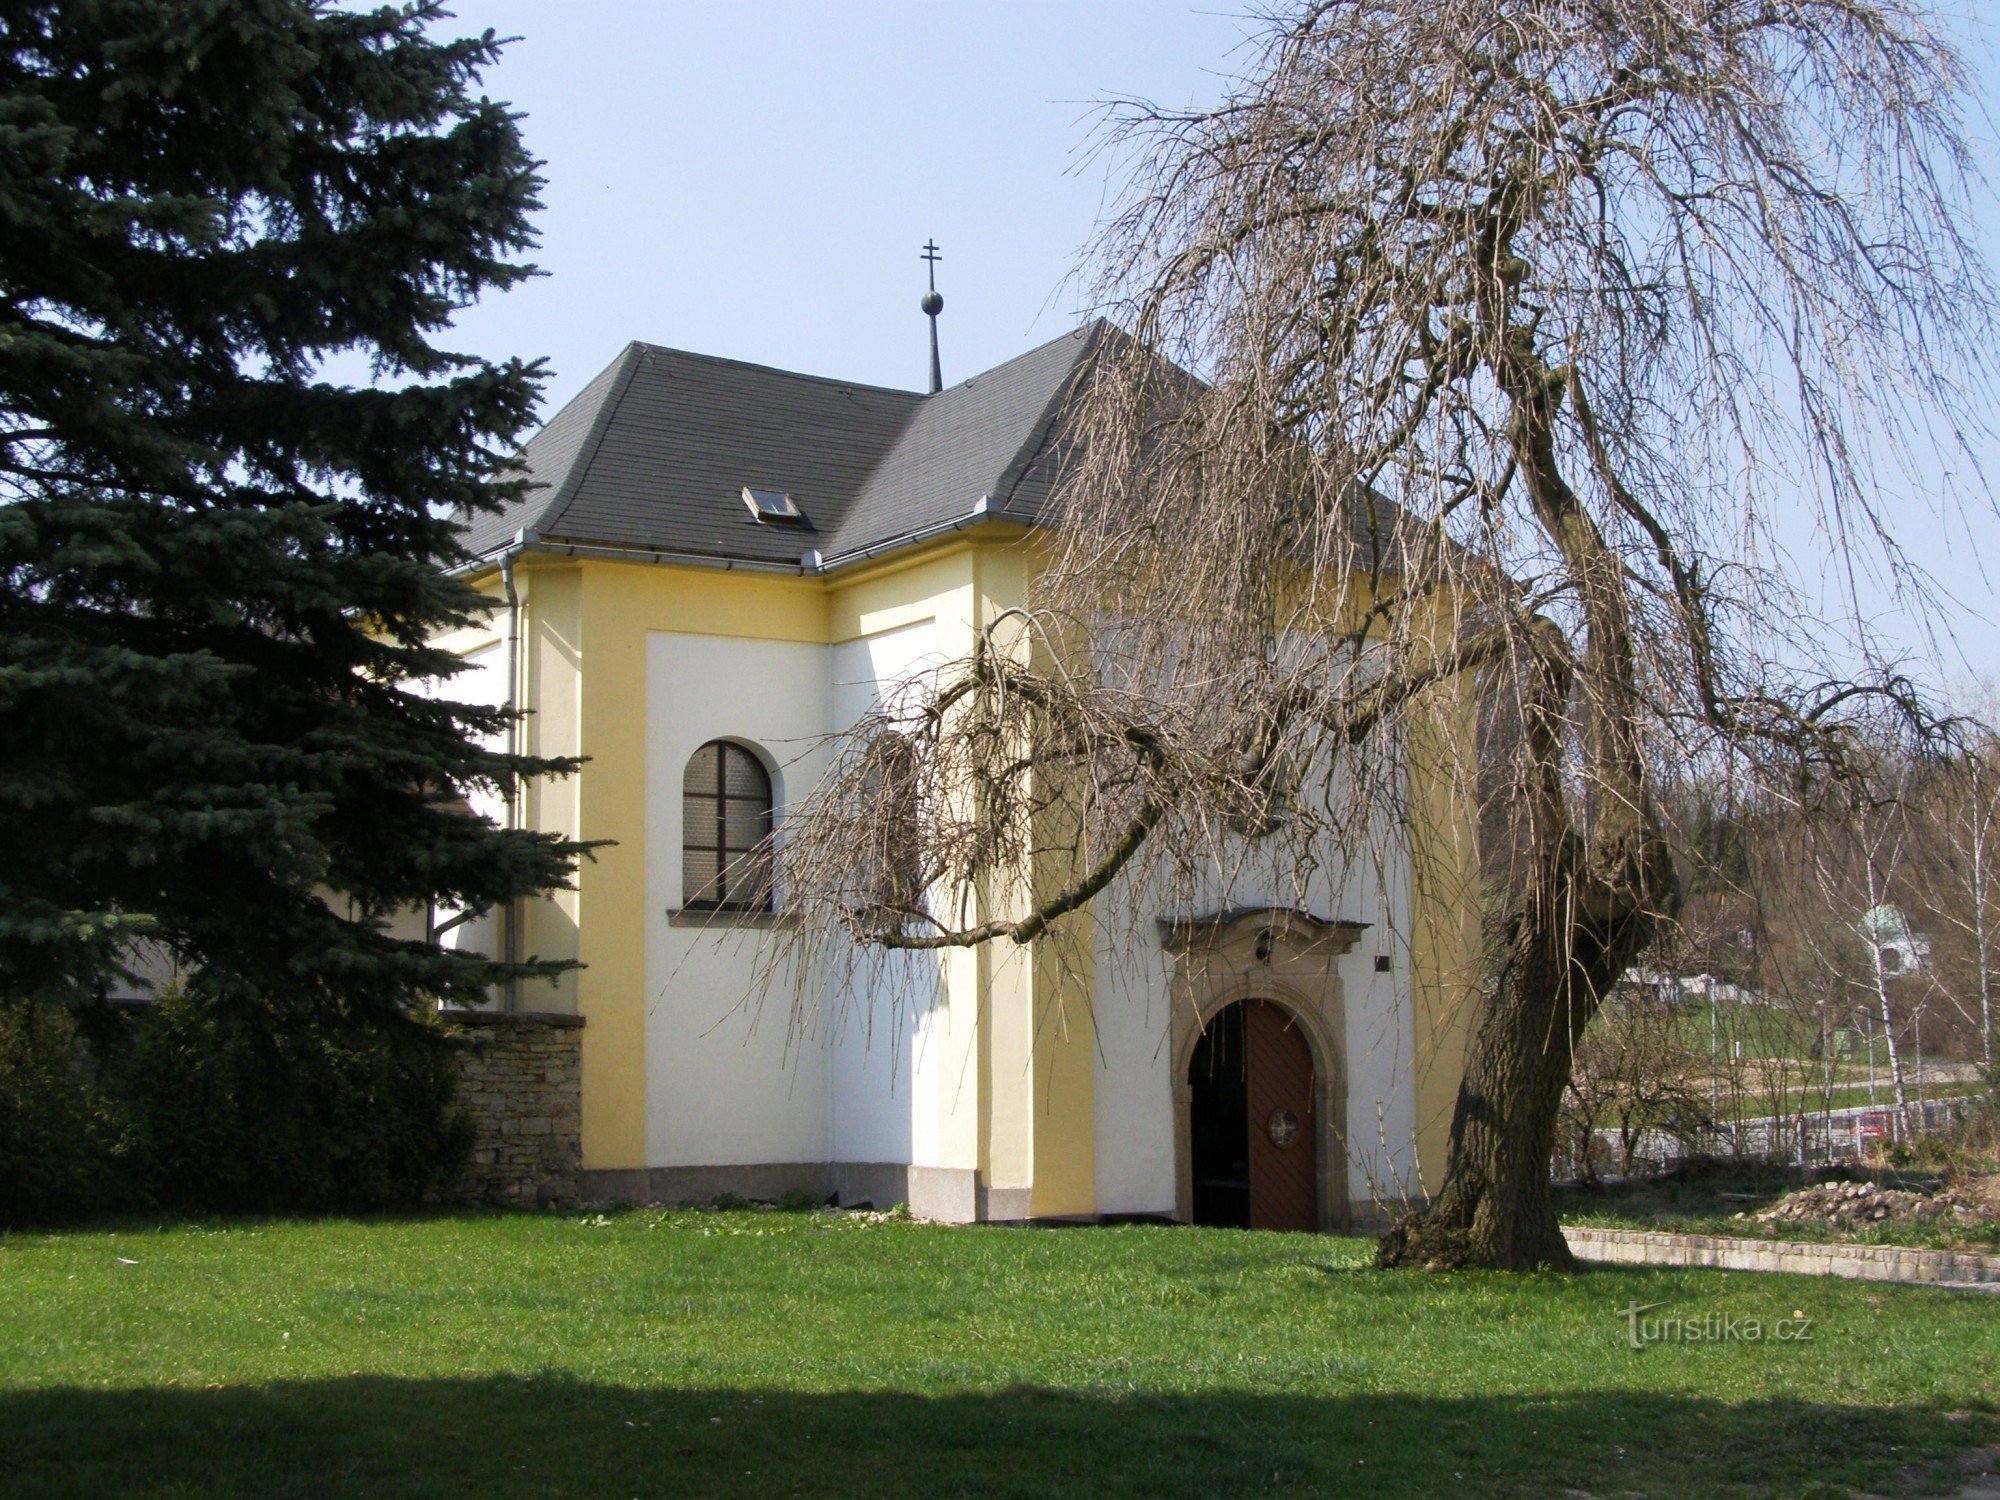 Žamberk - οστεοφυλάκιο της Παναγίας των Θλίψεων